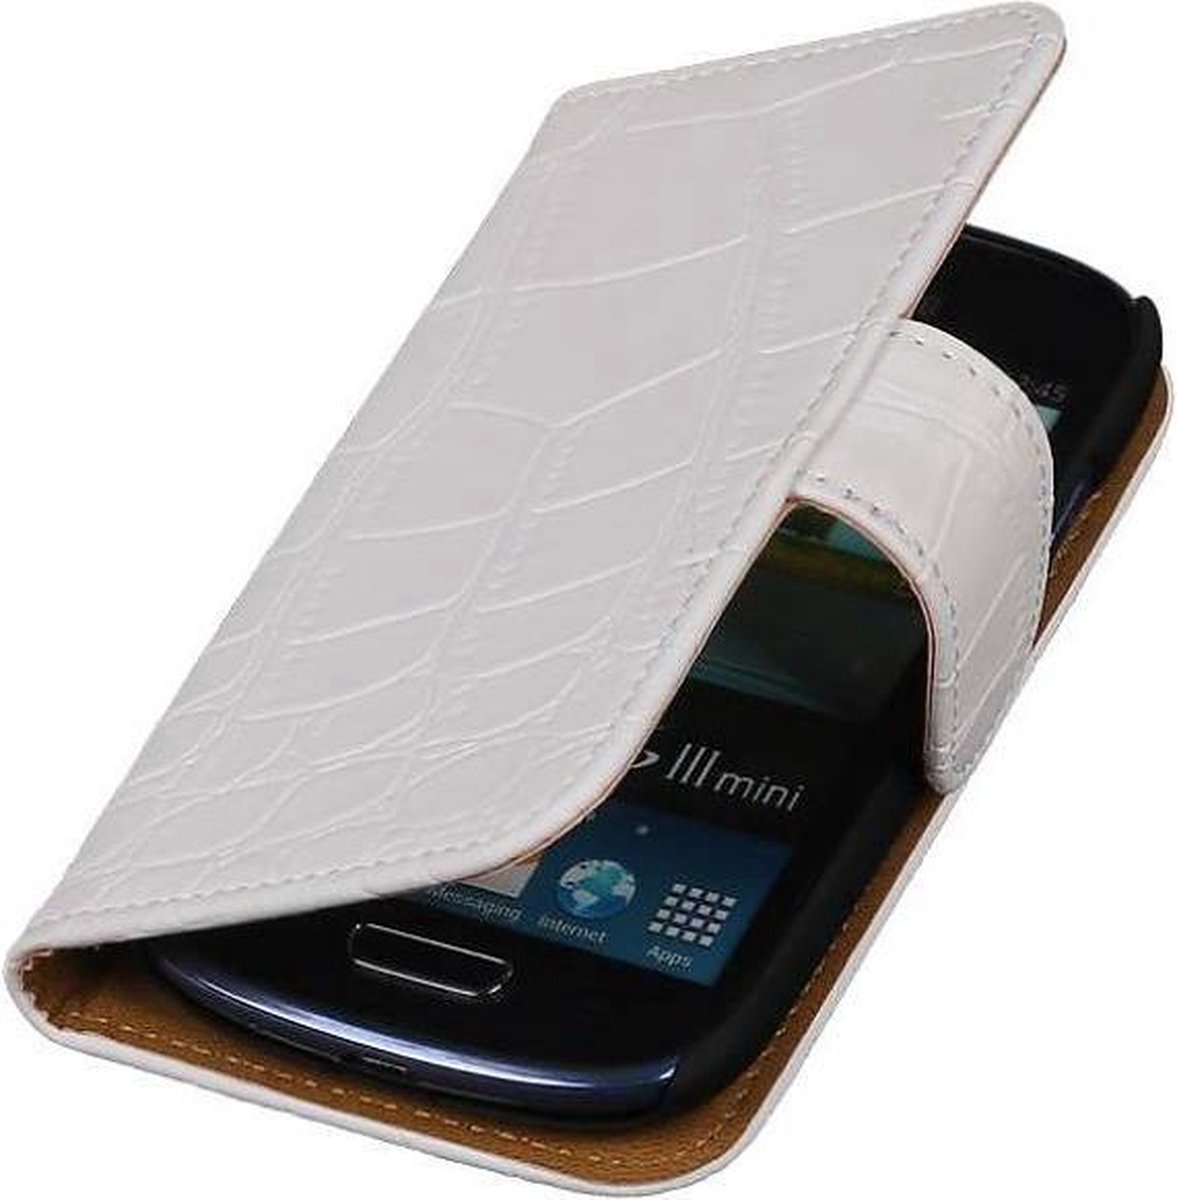 Mobieletelefoonhoesje.nl - Samsung Galaxy S3 Hoesje Krokodil Bookstyle Wit